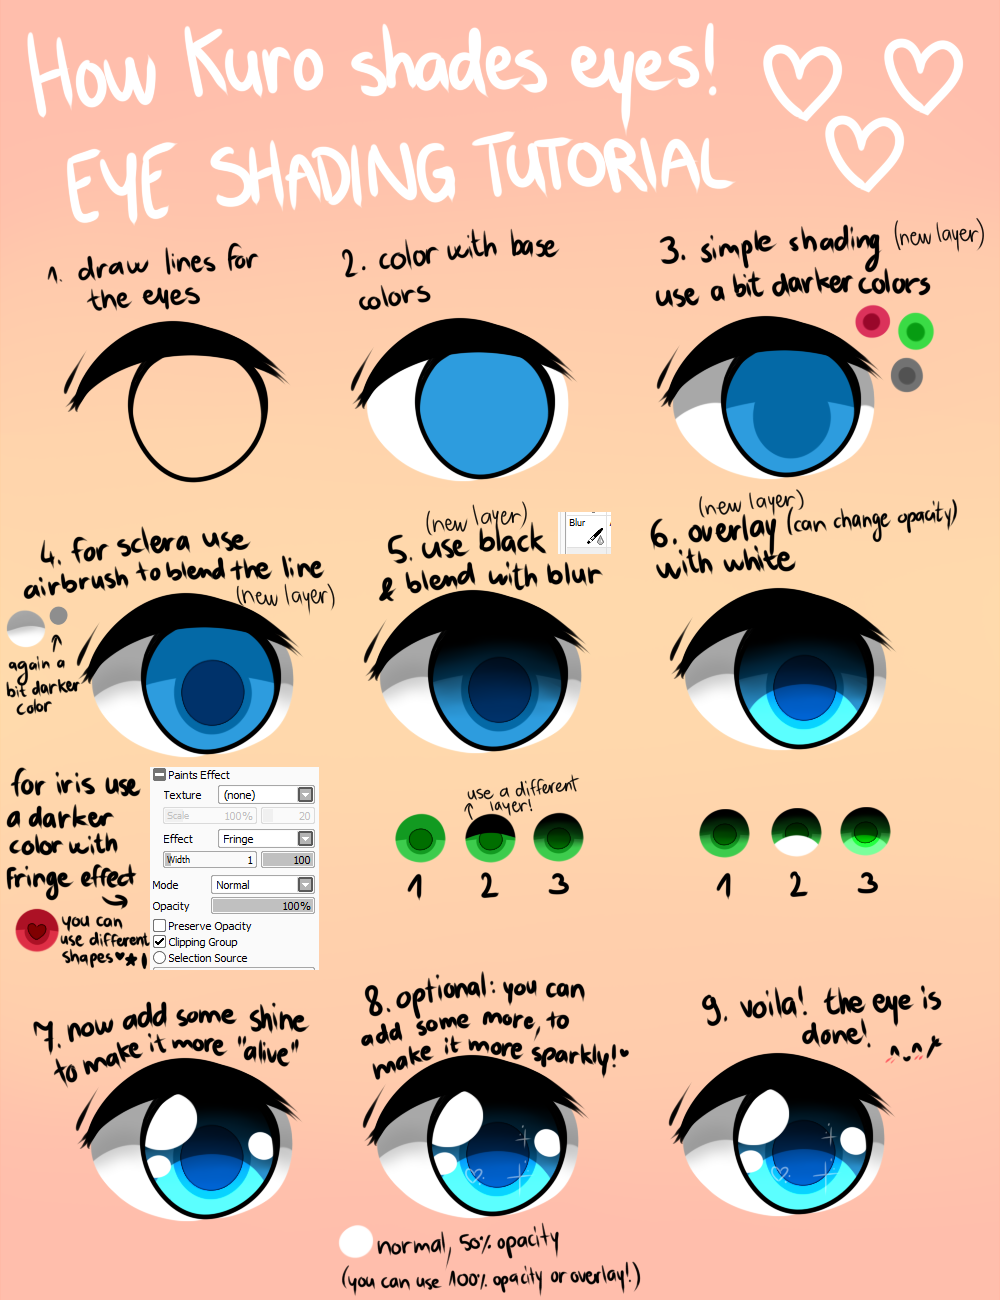 How Kuro shades eyes! [EYE SHADING TUTORIAL] by kuroducky on DeviantArt